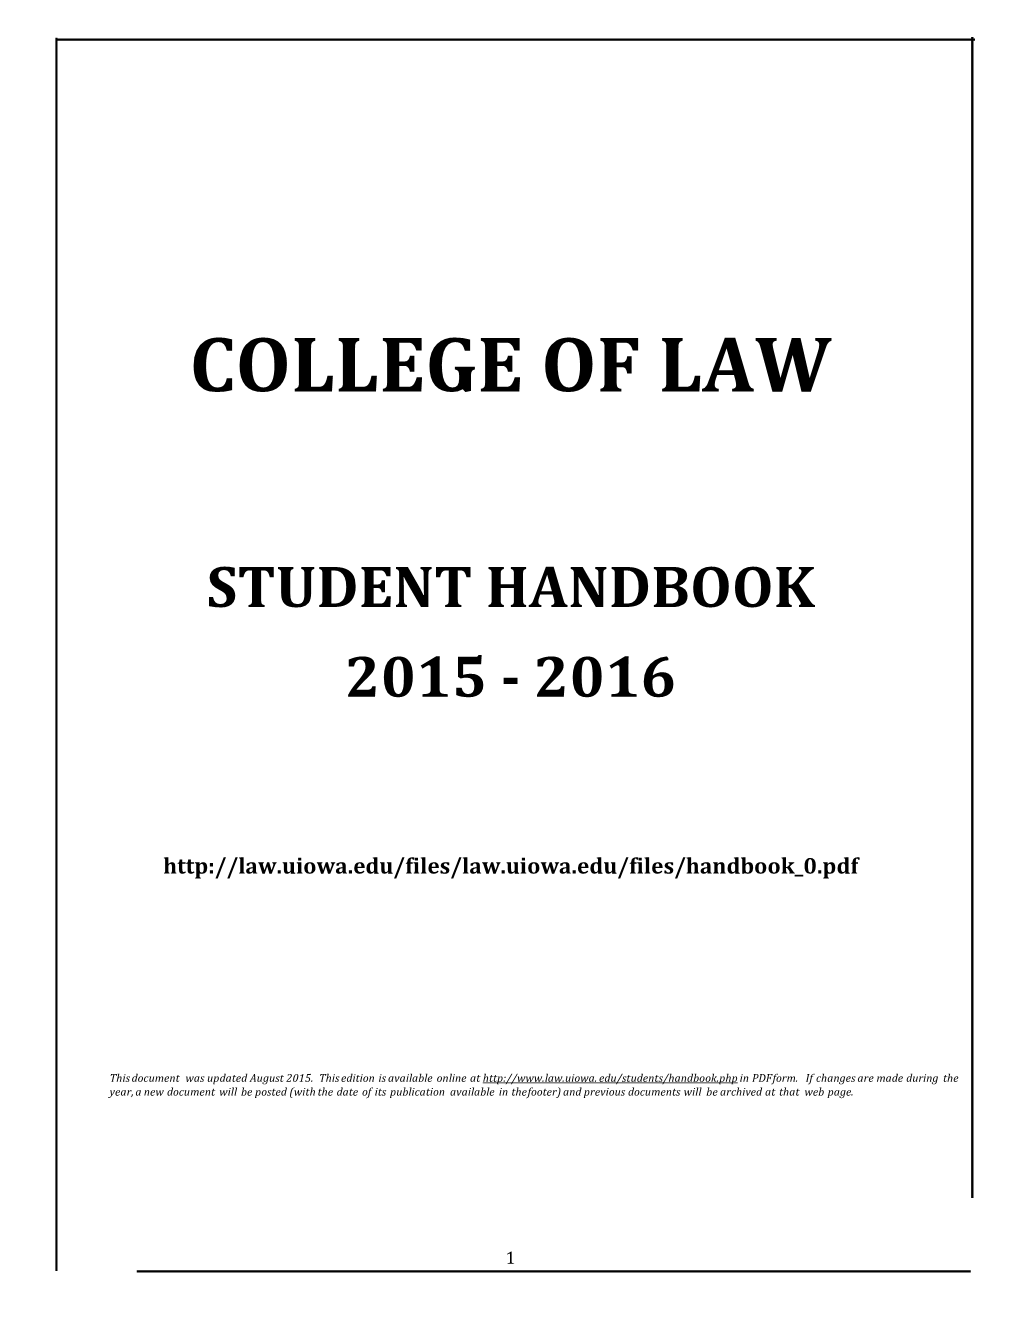 Student Handbook 2015